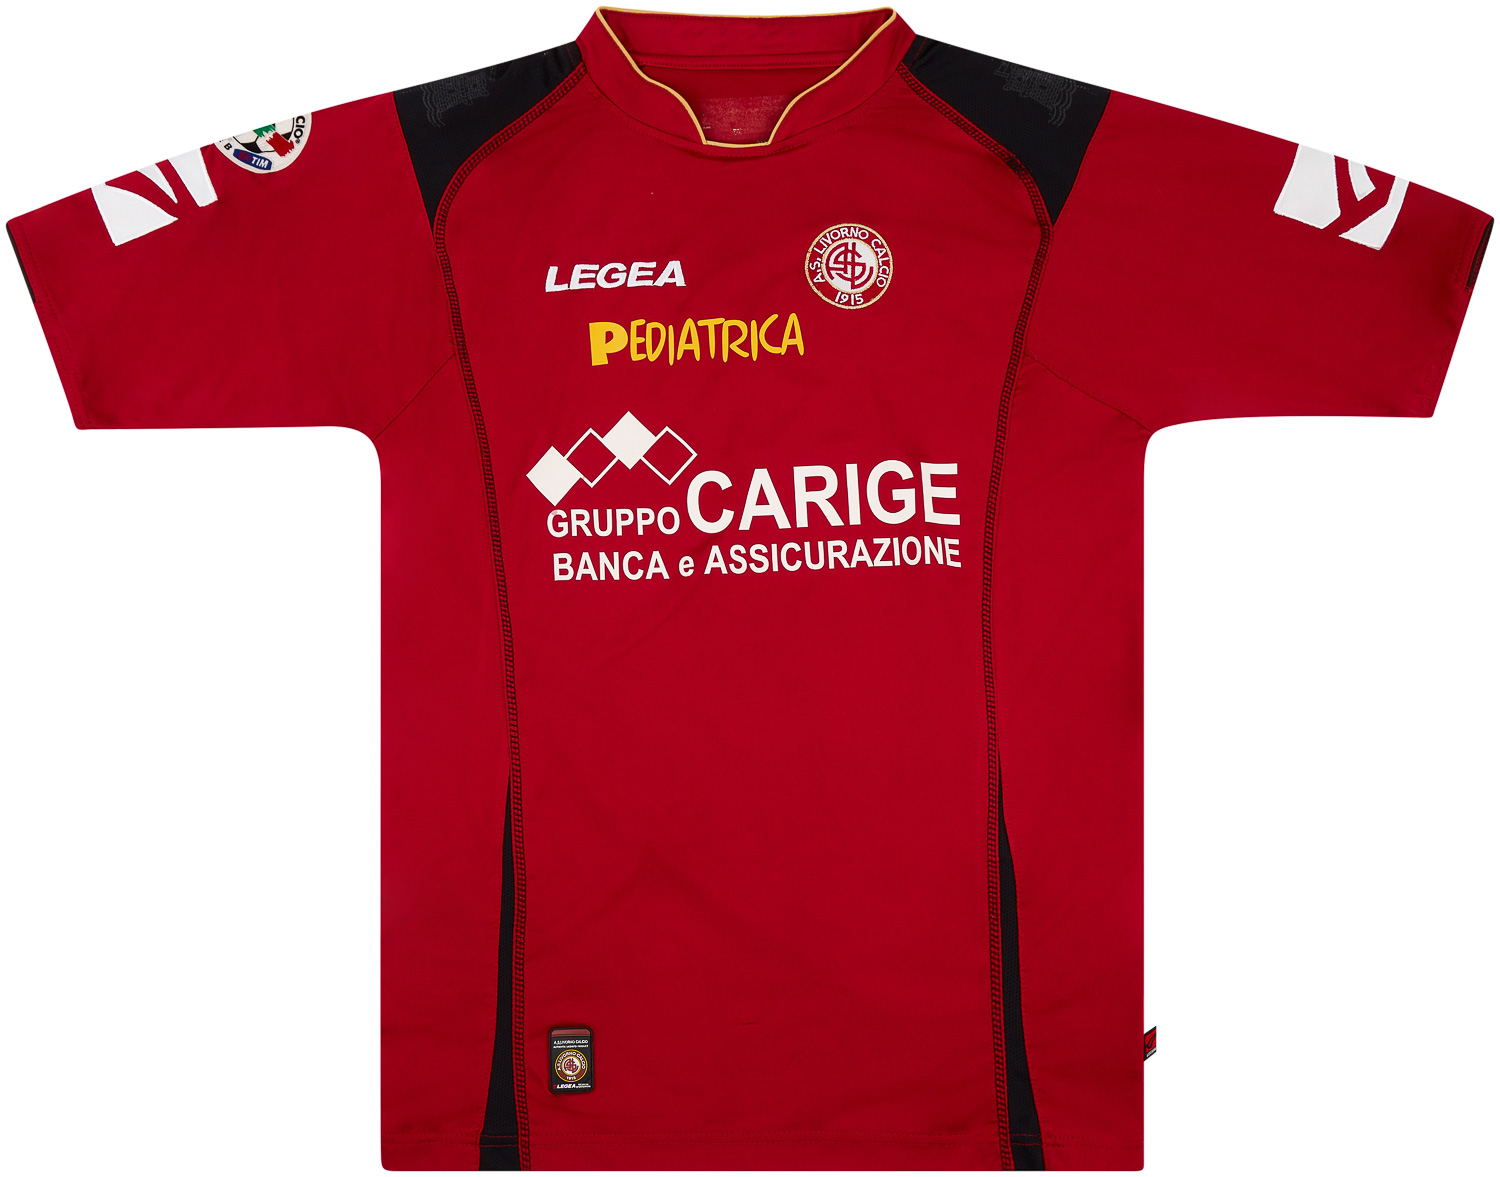 2008-09 Livorno Match Issue Home/GK Shirt De Lucia #1